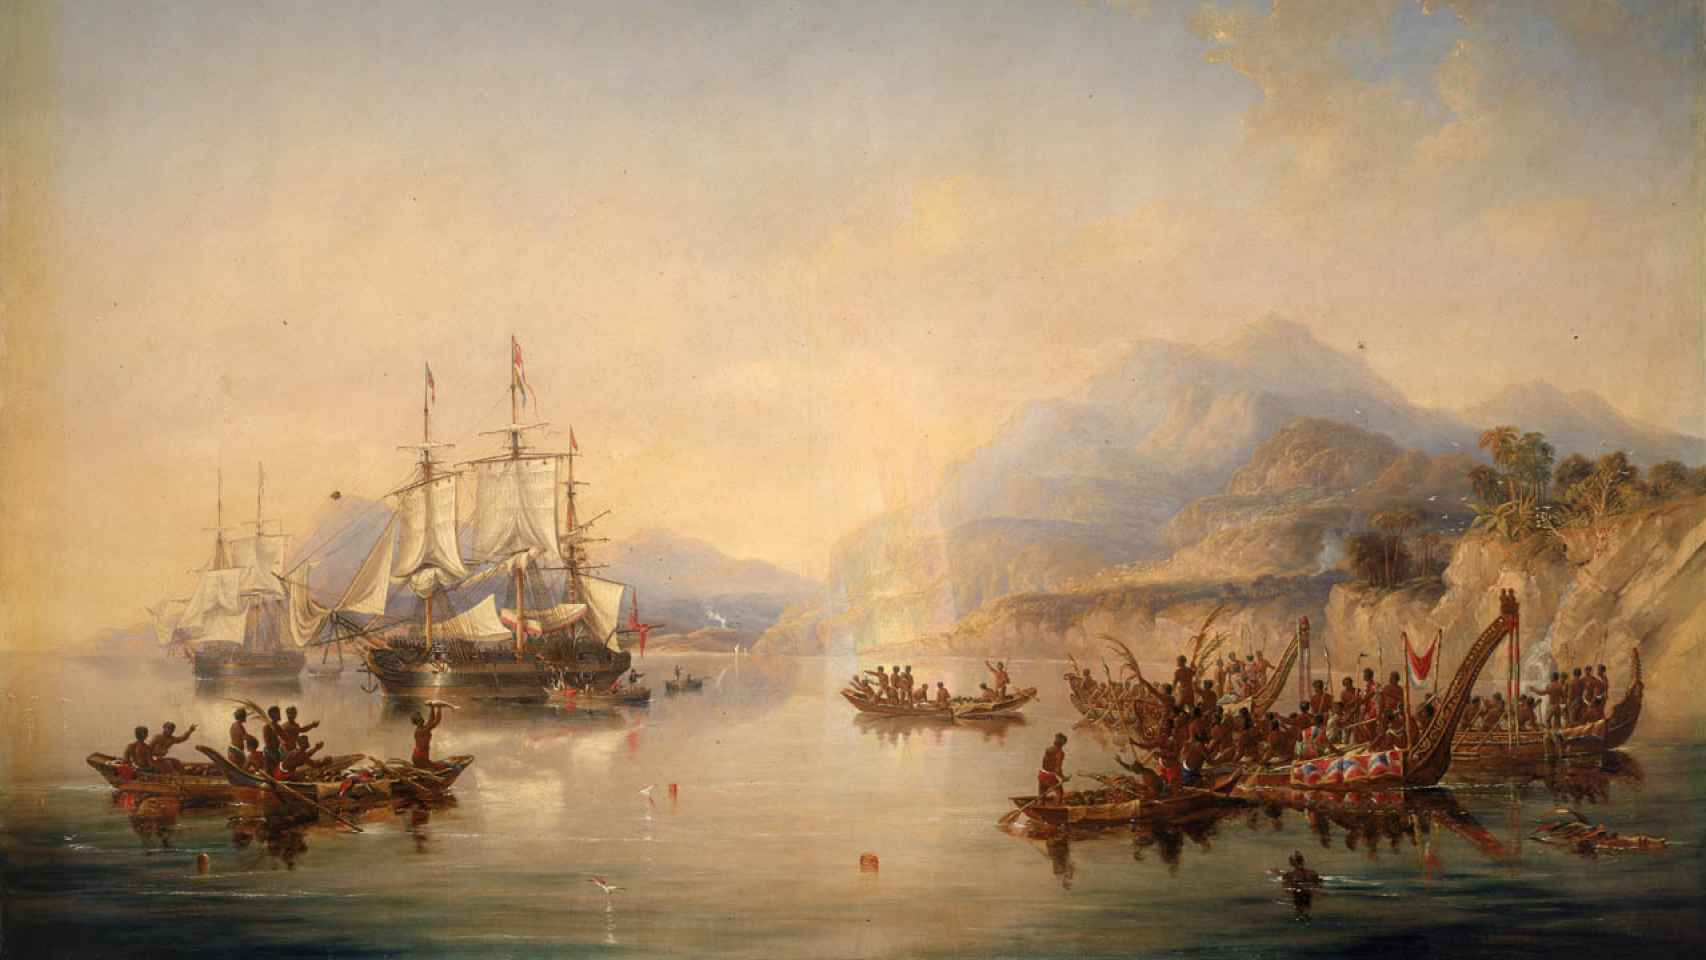 El 'Erebus' y el 'terror' en Nueva Zelanda en agosto de 1841, según lo imaginó el pintor John Wilson Carmichael.